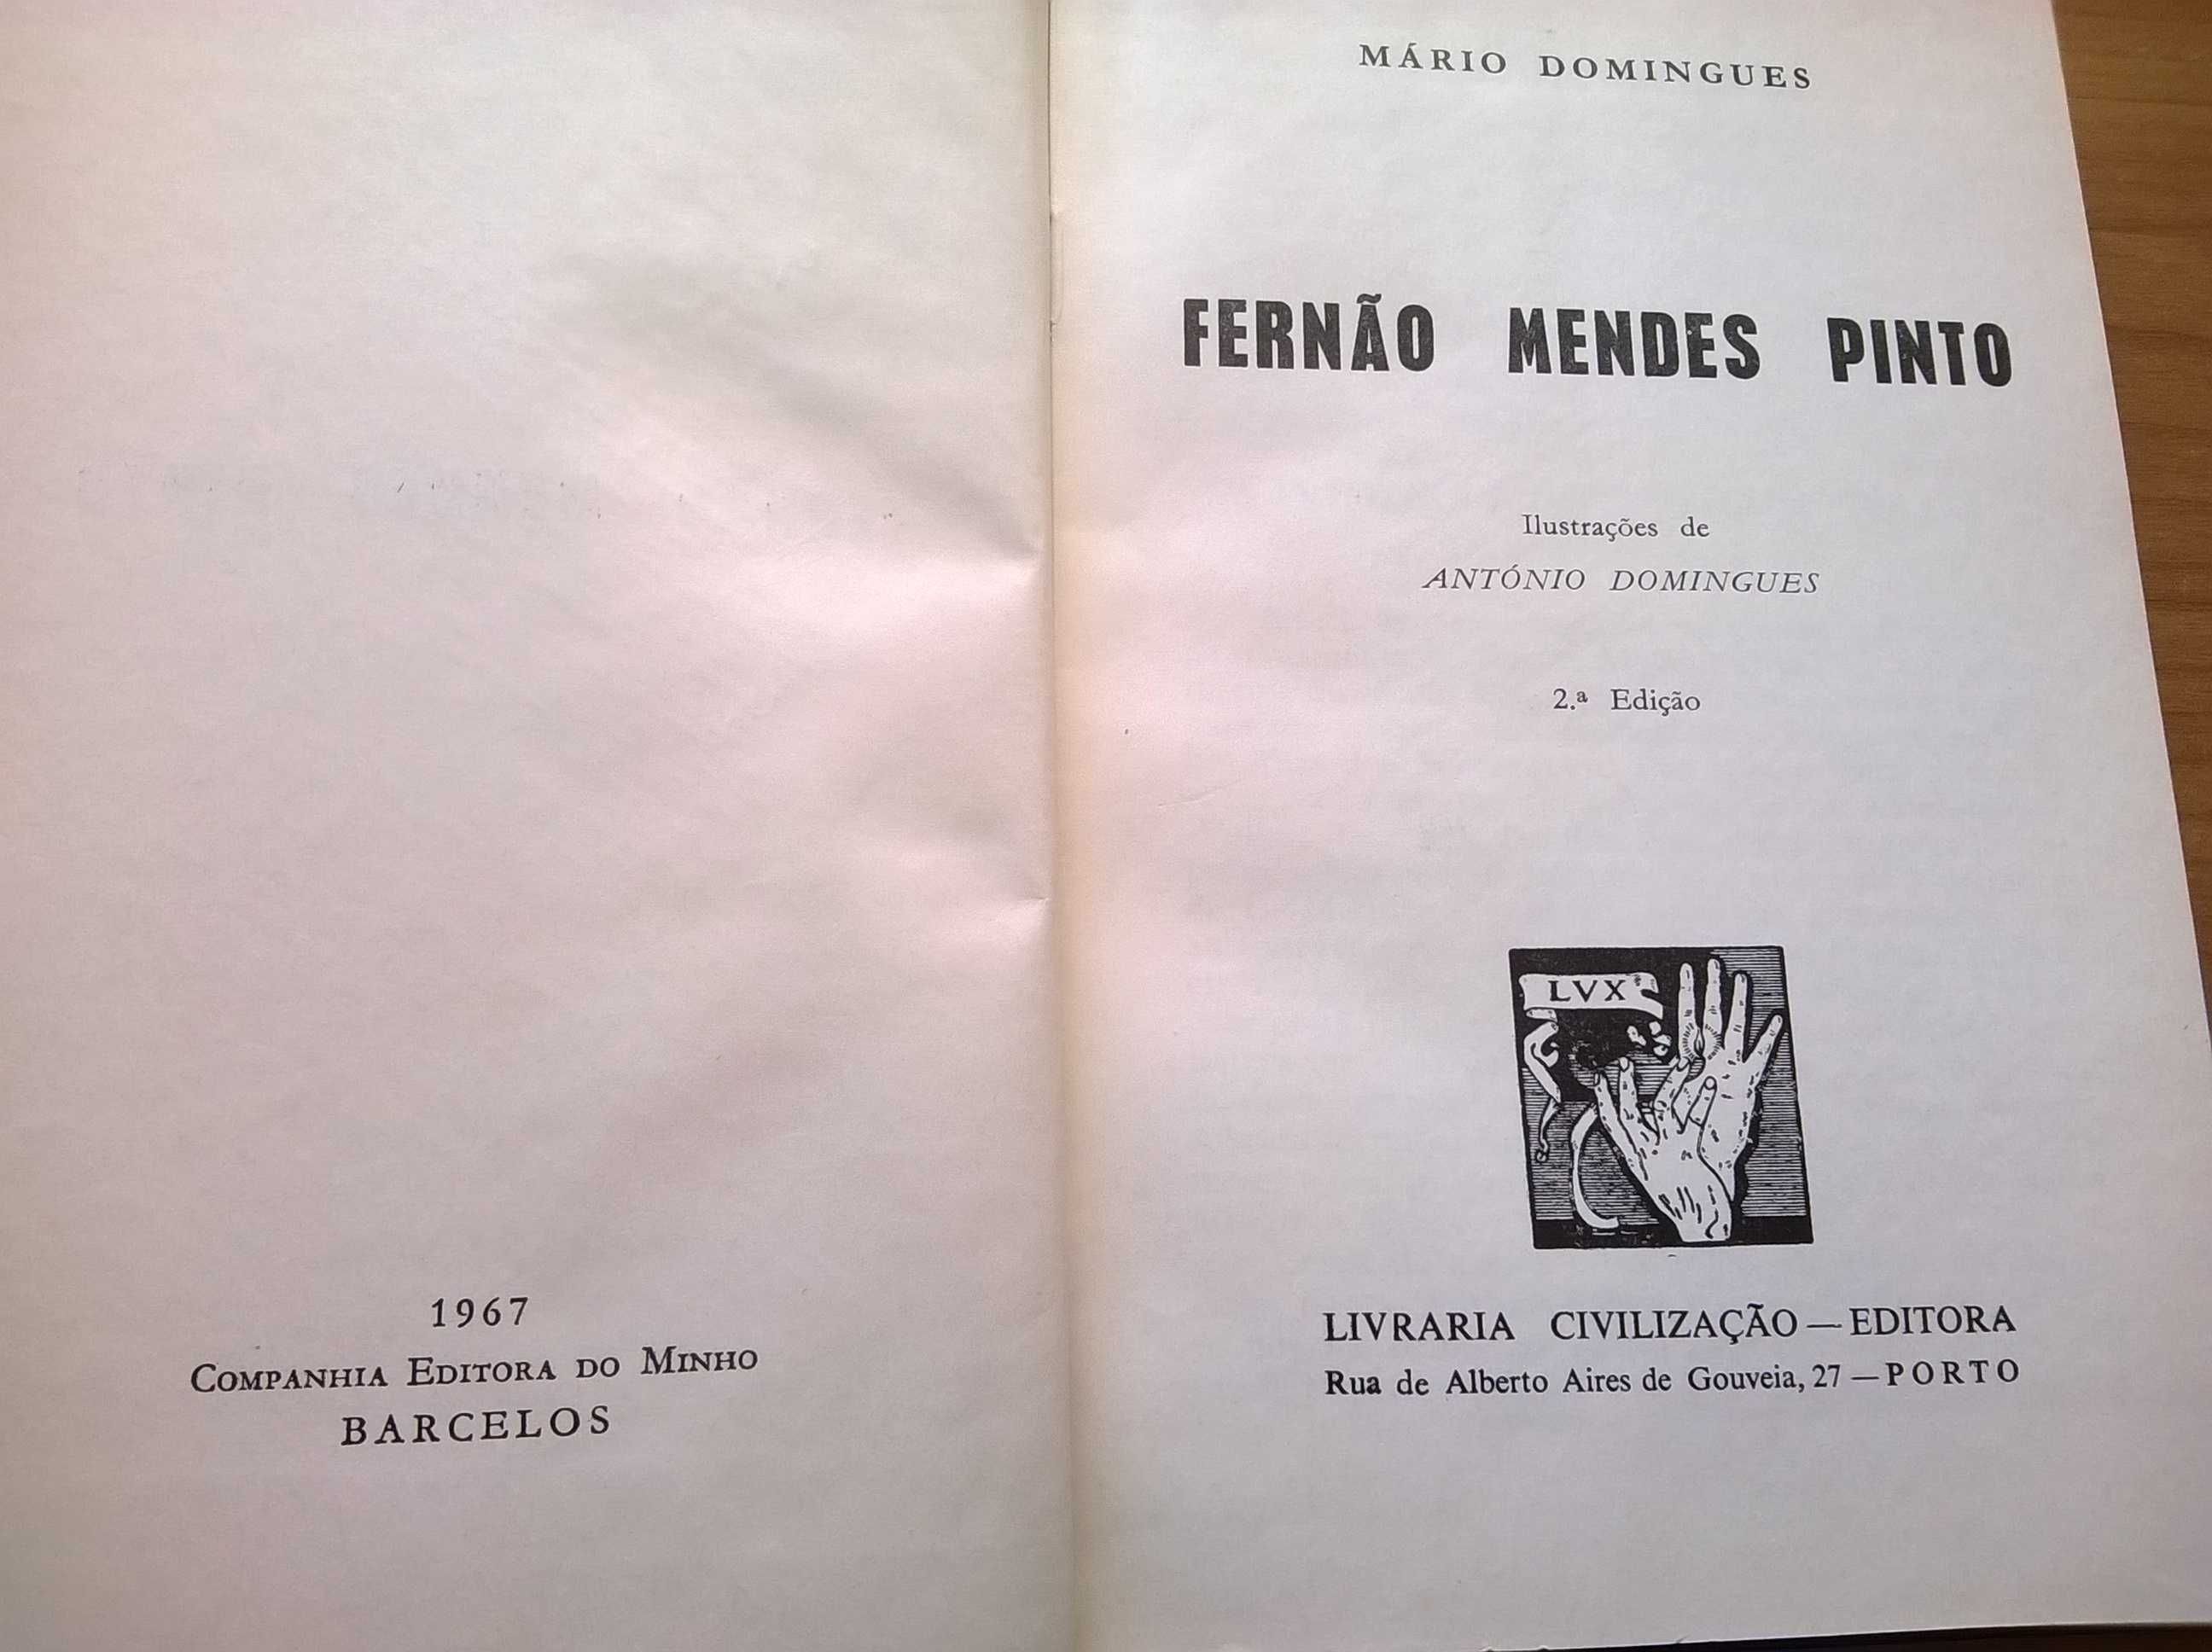 Fernão Mendes Pinto - Mário Domingues (portes grátis)